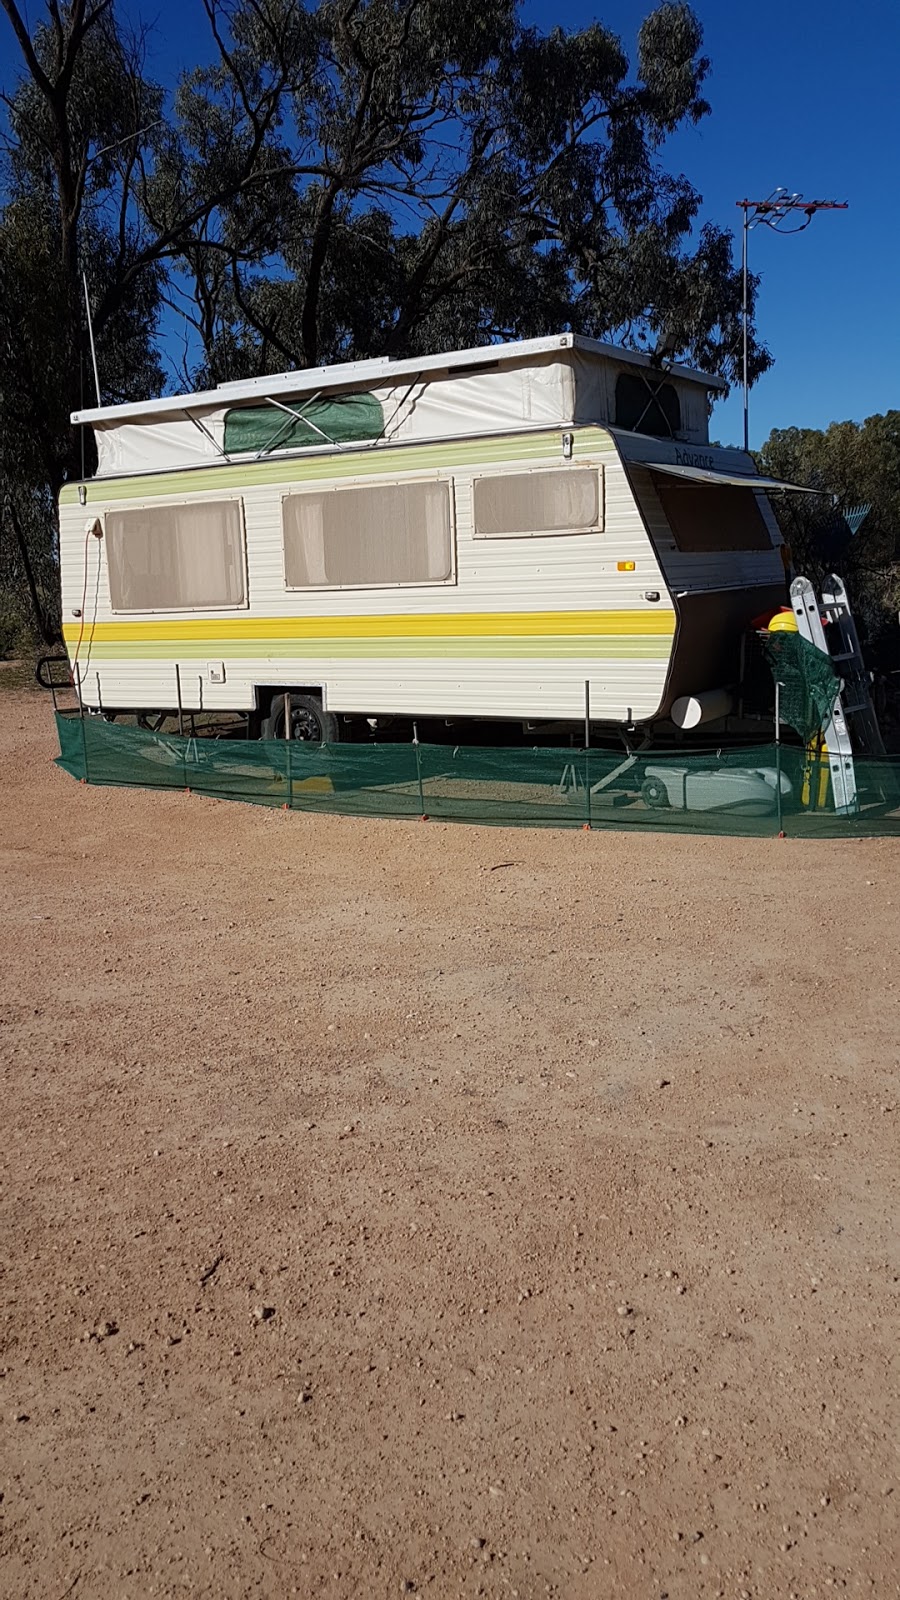 ChaffeesLanding Track | campground | Chaffeessite 3Merbein, Merbein VIC 3505, Australia